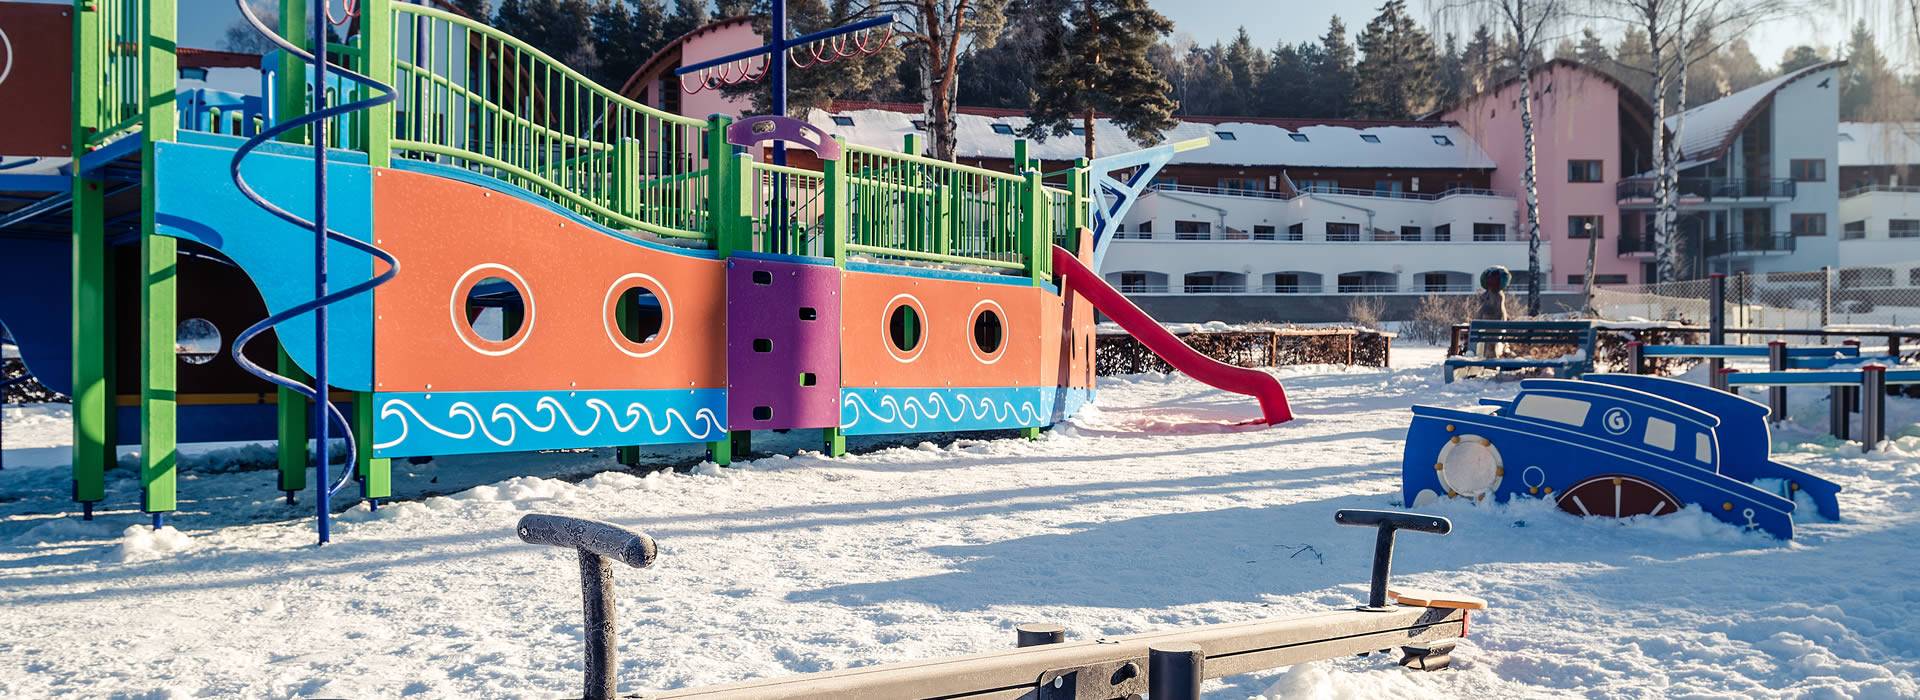 Children's playground with dwarf Witek's ship